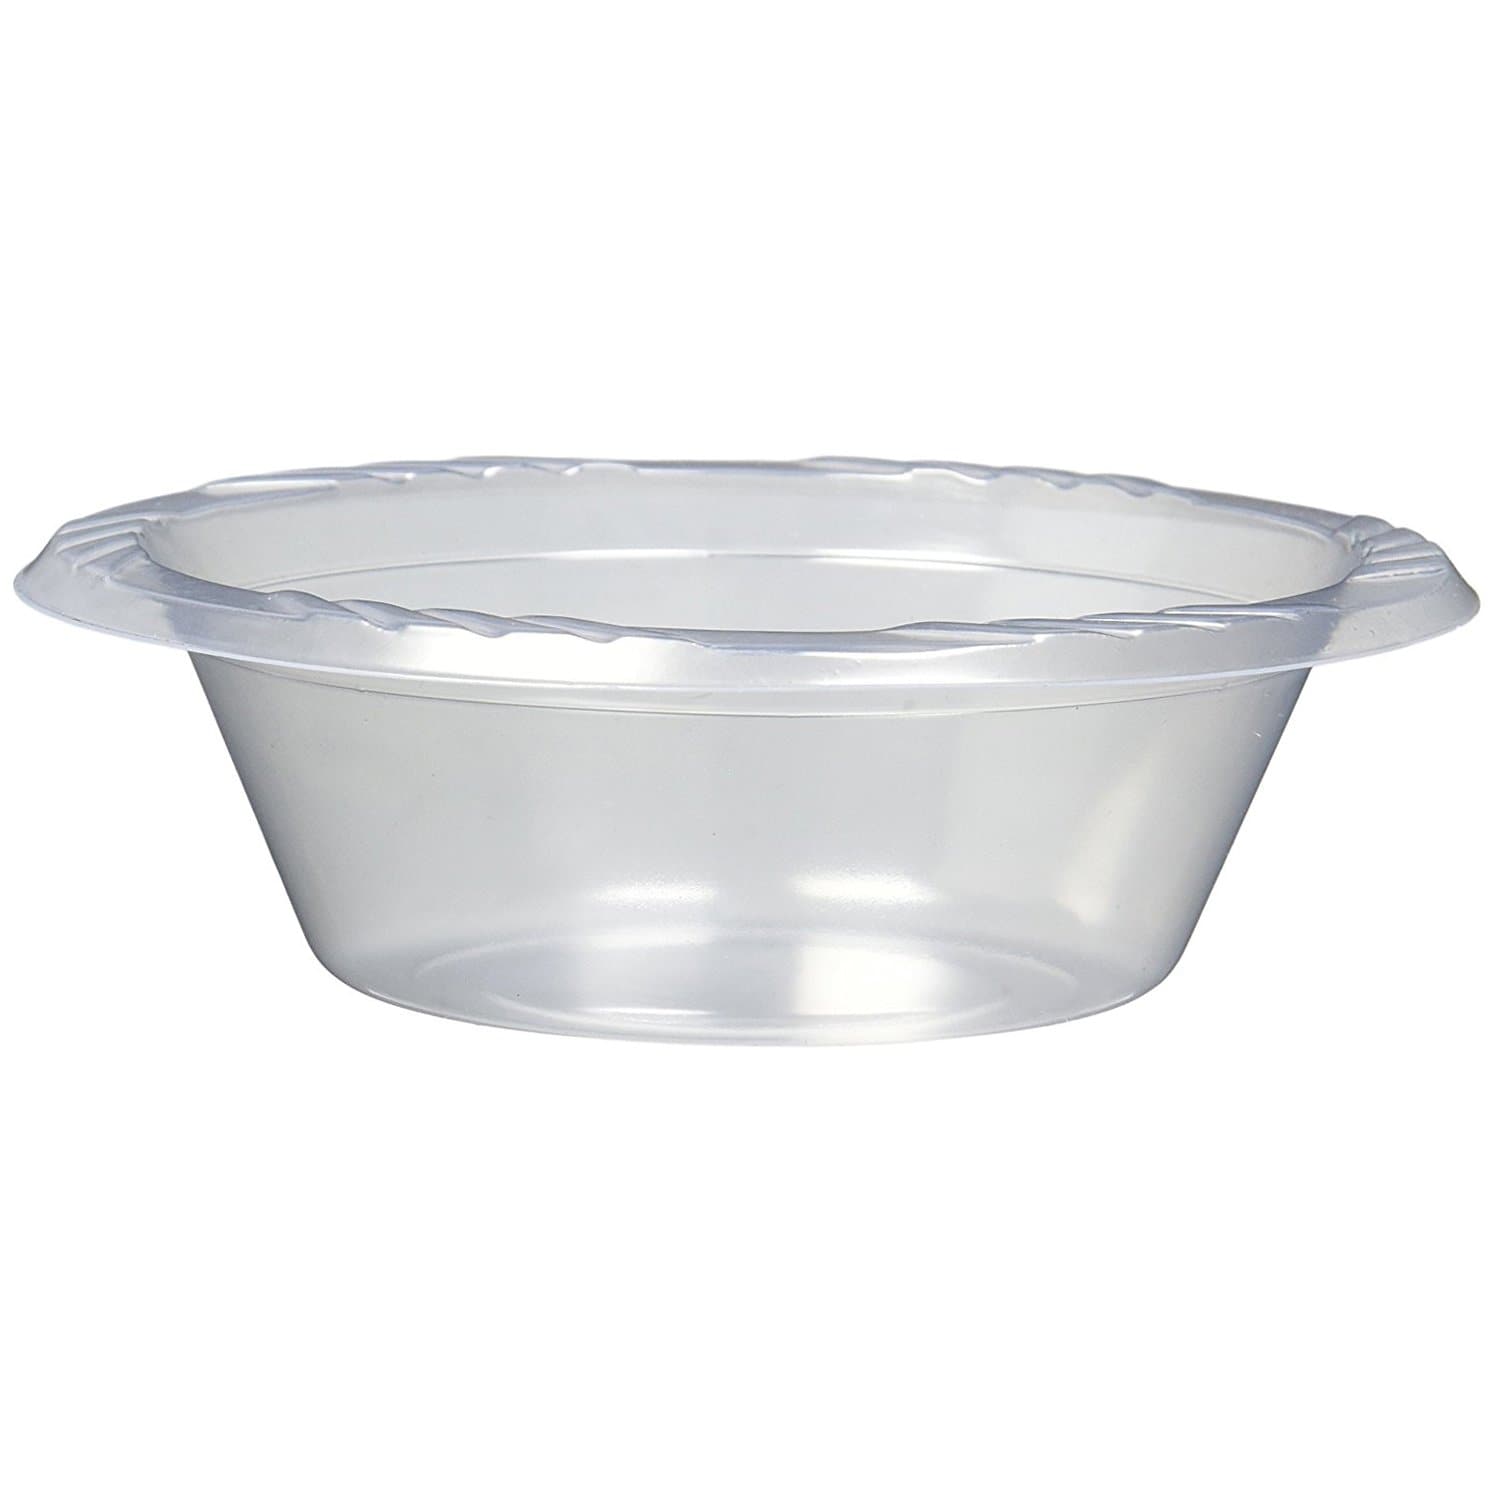 http://onlyonestopshop.com/cdn/shop/products/Clear-Plastic-Soup-Bowls-12oz-Blue-Sky-1603926036.jpg?v=1608704802